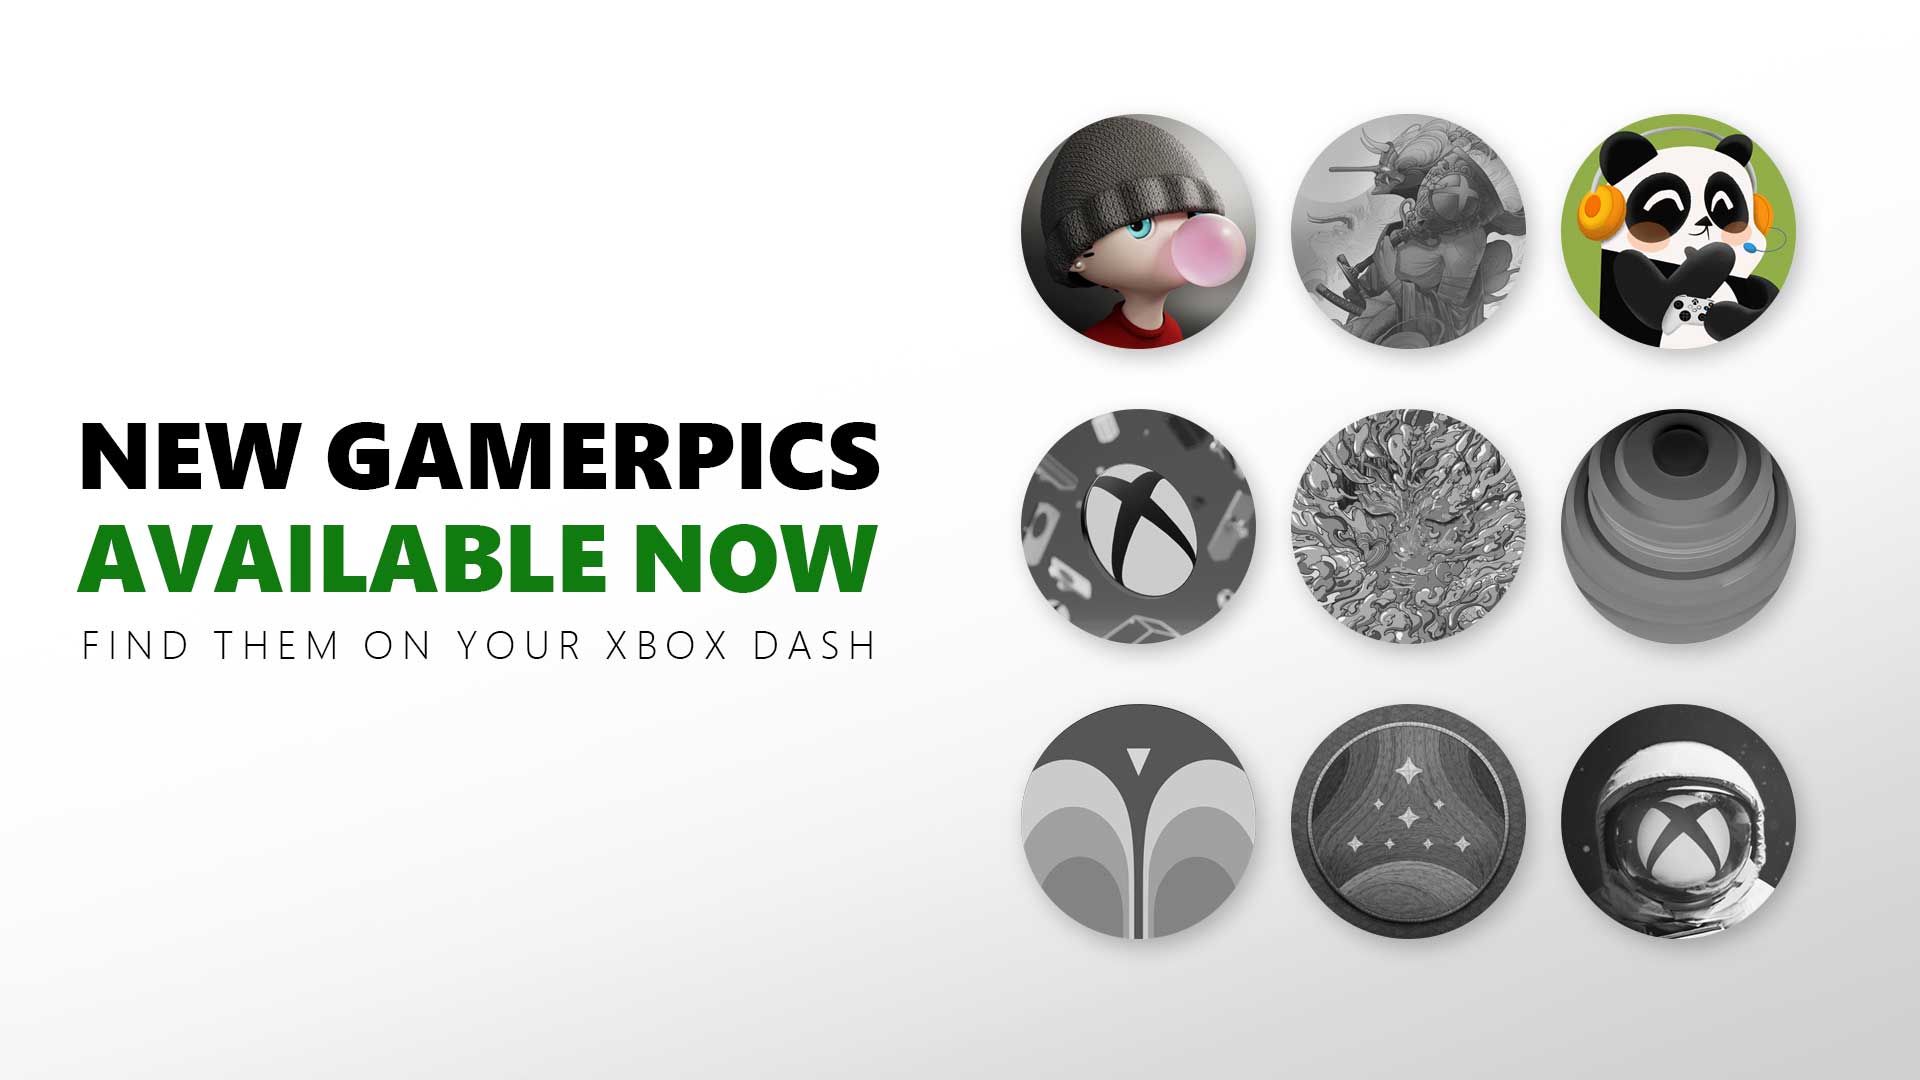 Classic Xbox 360 Gamerpics reimagined